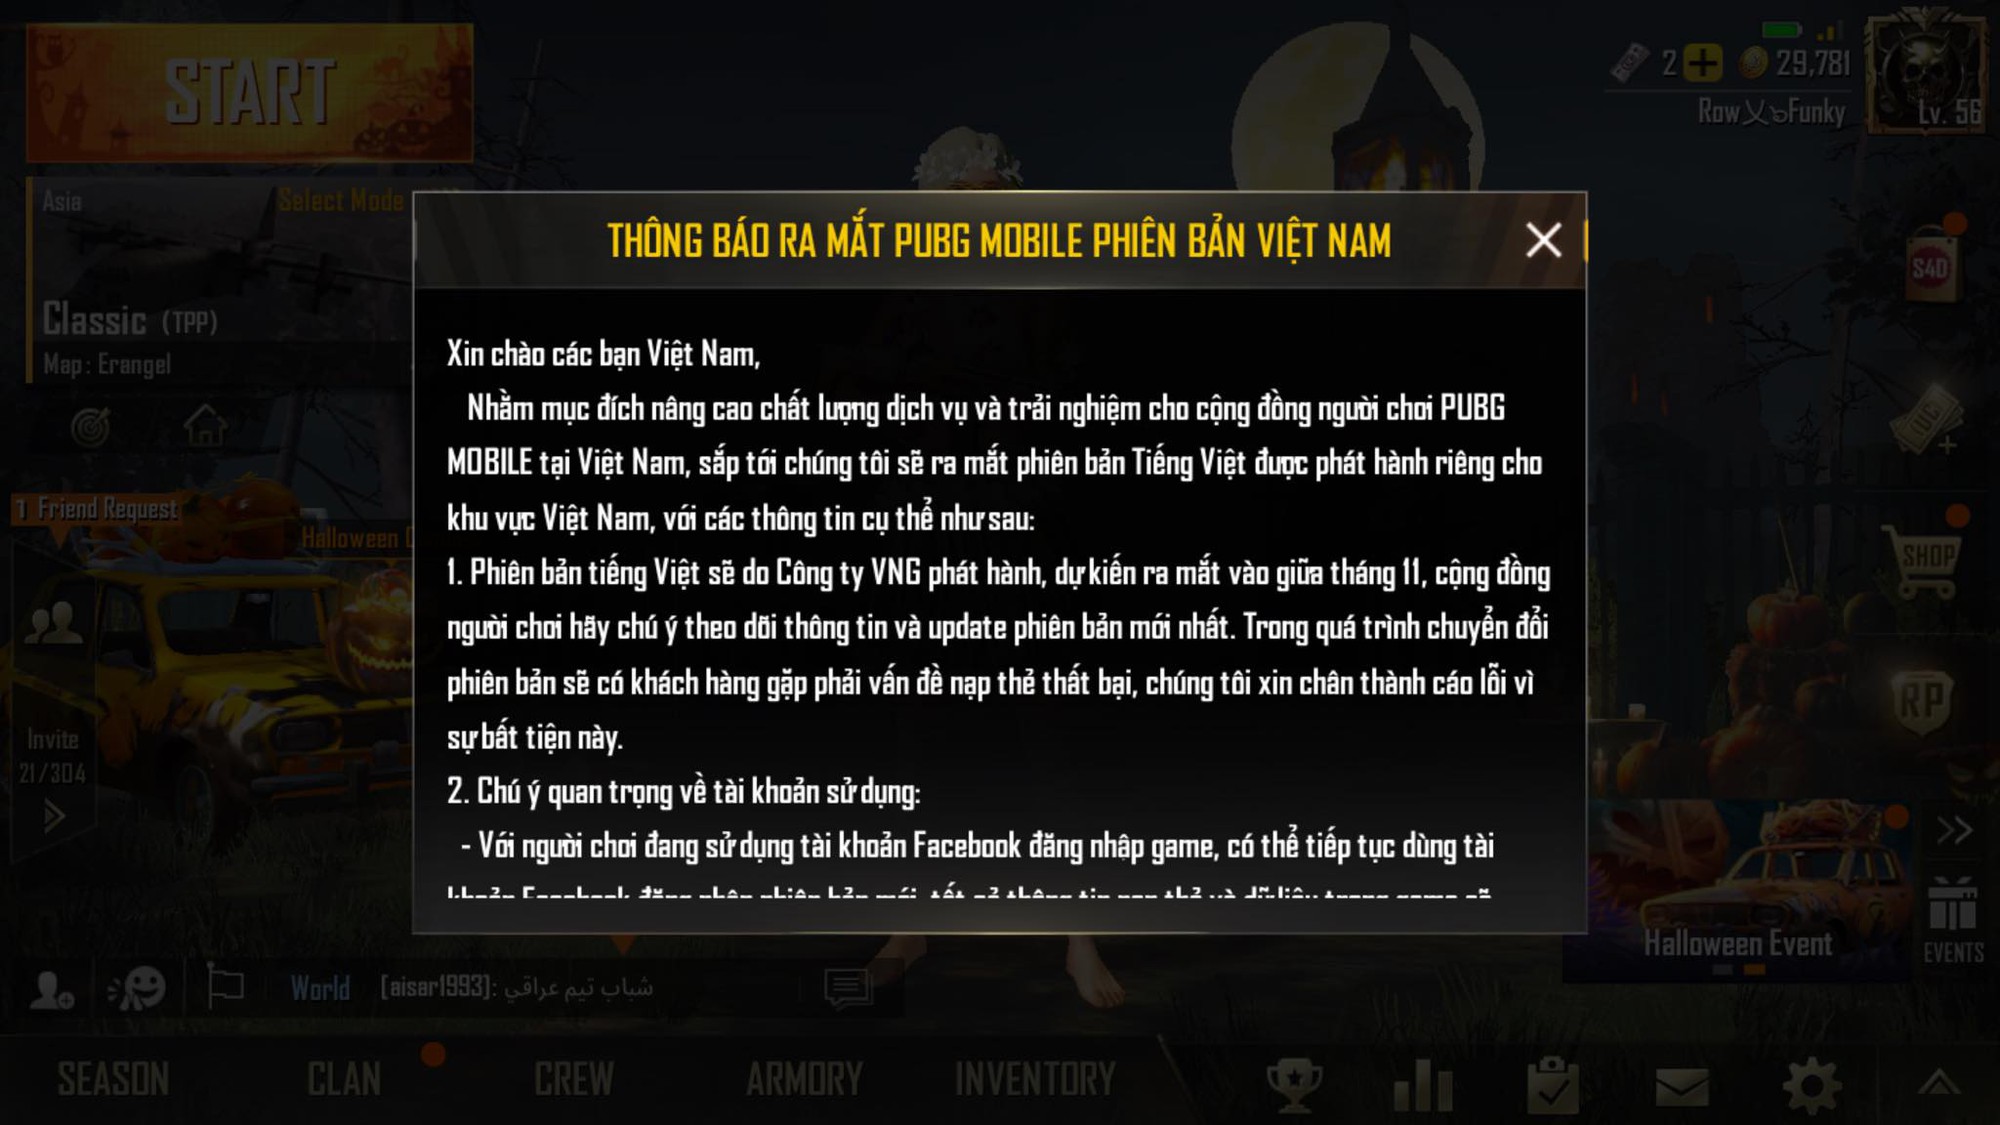 PUBG Mobile Việt đã và đang phát triển rất nhanh chóng trong cộng đồng game thủ Việt. Với sự đa dạng trong những hoạt động và các sự kiện đặc biệt, cộng đồng game thủ PUBG Mobile Việt trở nên mạnh mẽ và sống động hơn bao giờ hết. Hãy tham gia ngay để trải nghiệm những hoạt động thú vị này!